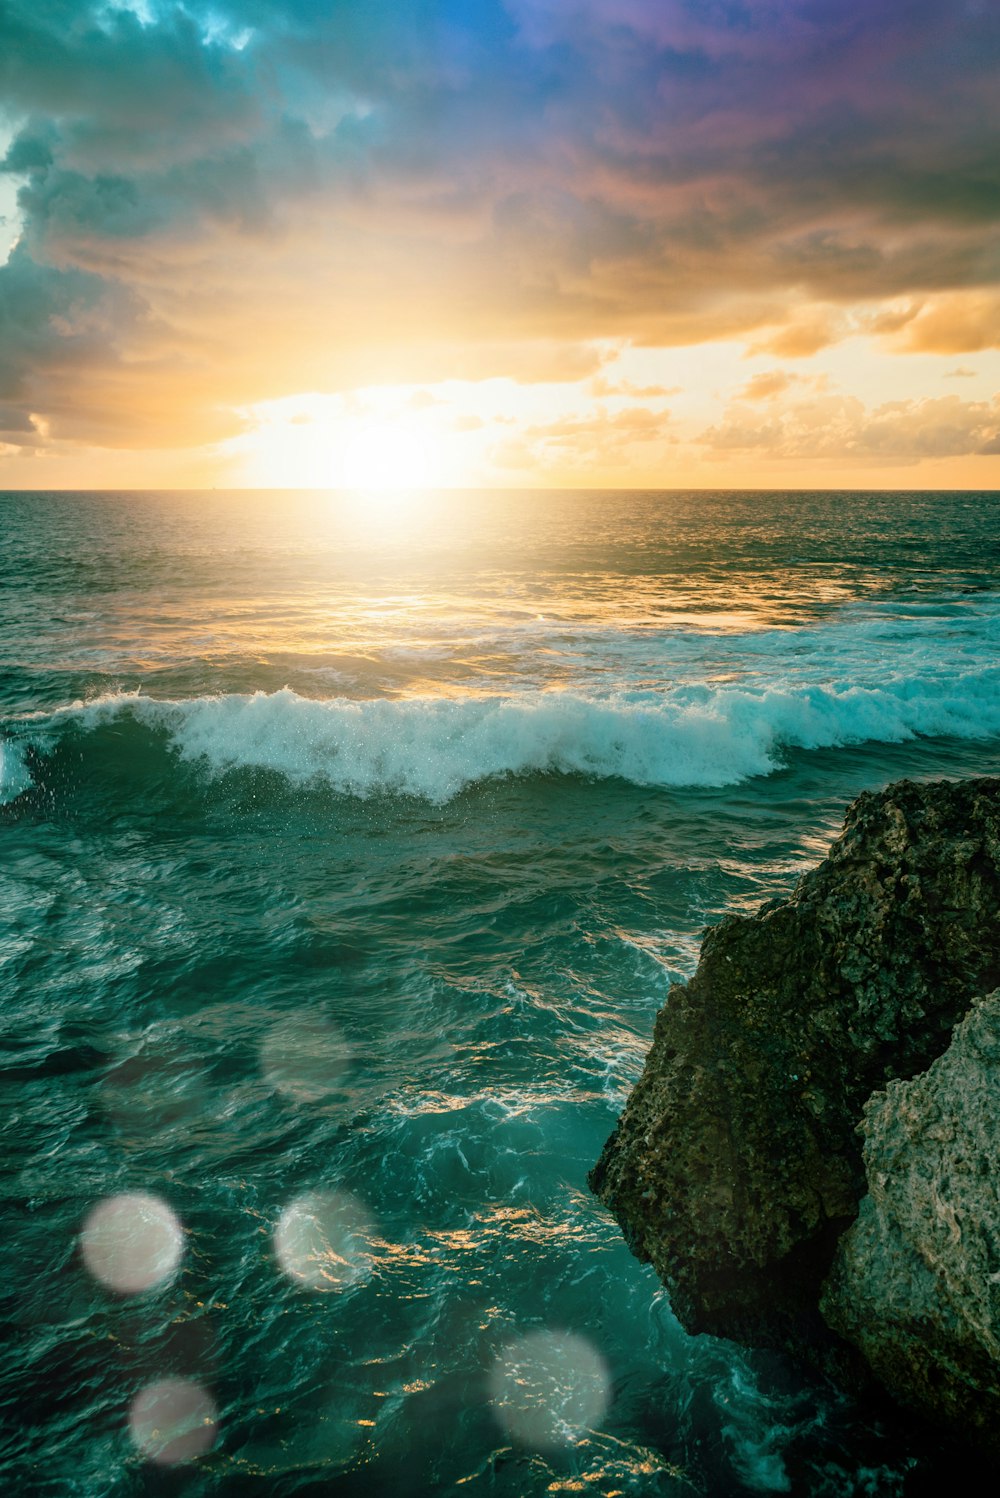 ondas do oceano batendo em rochas durante o pôr do sol